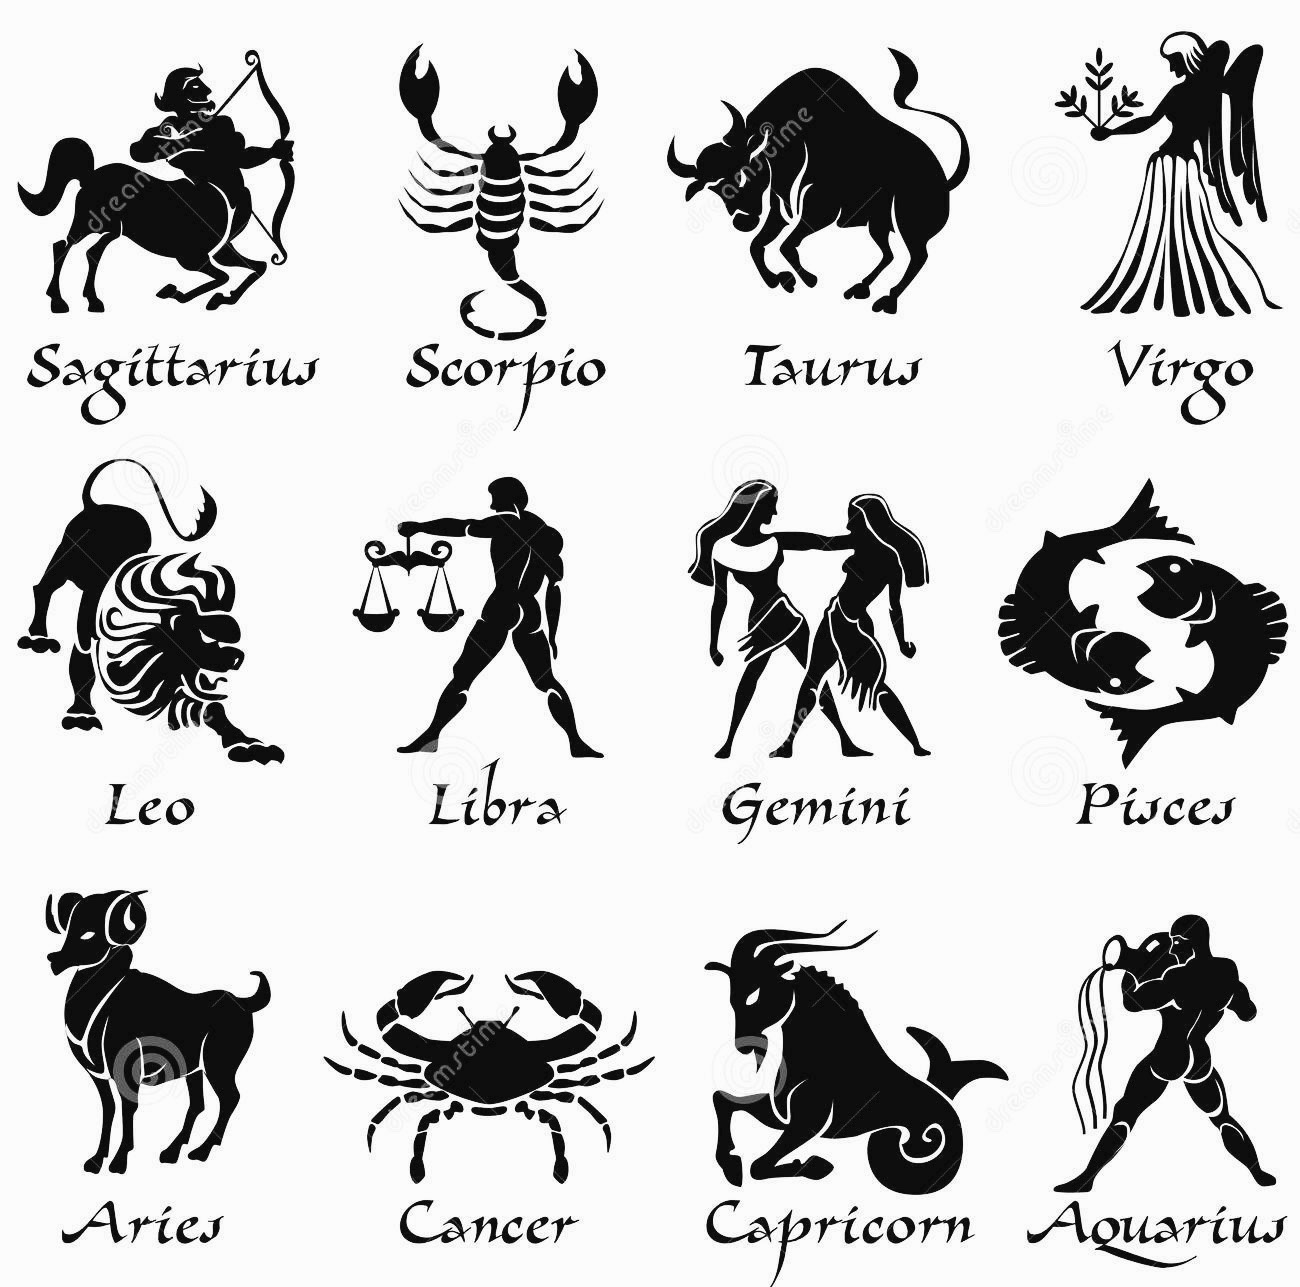 Astrologer's Secrets: REVEALED